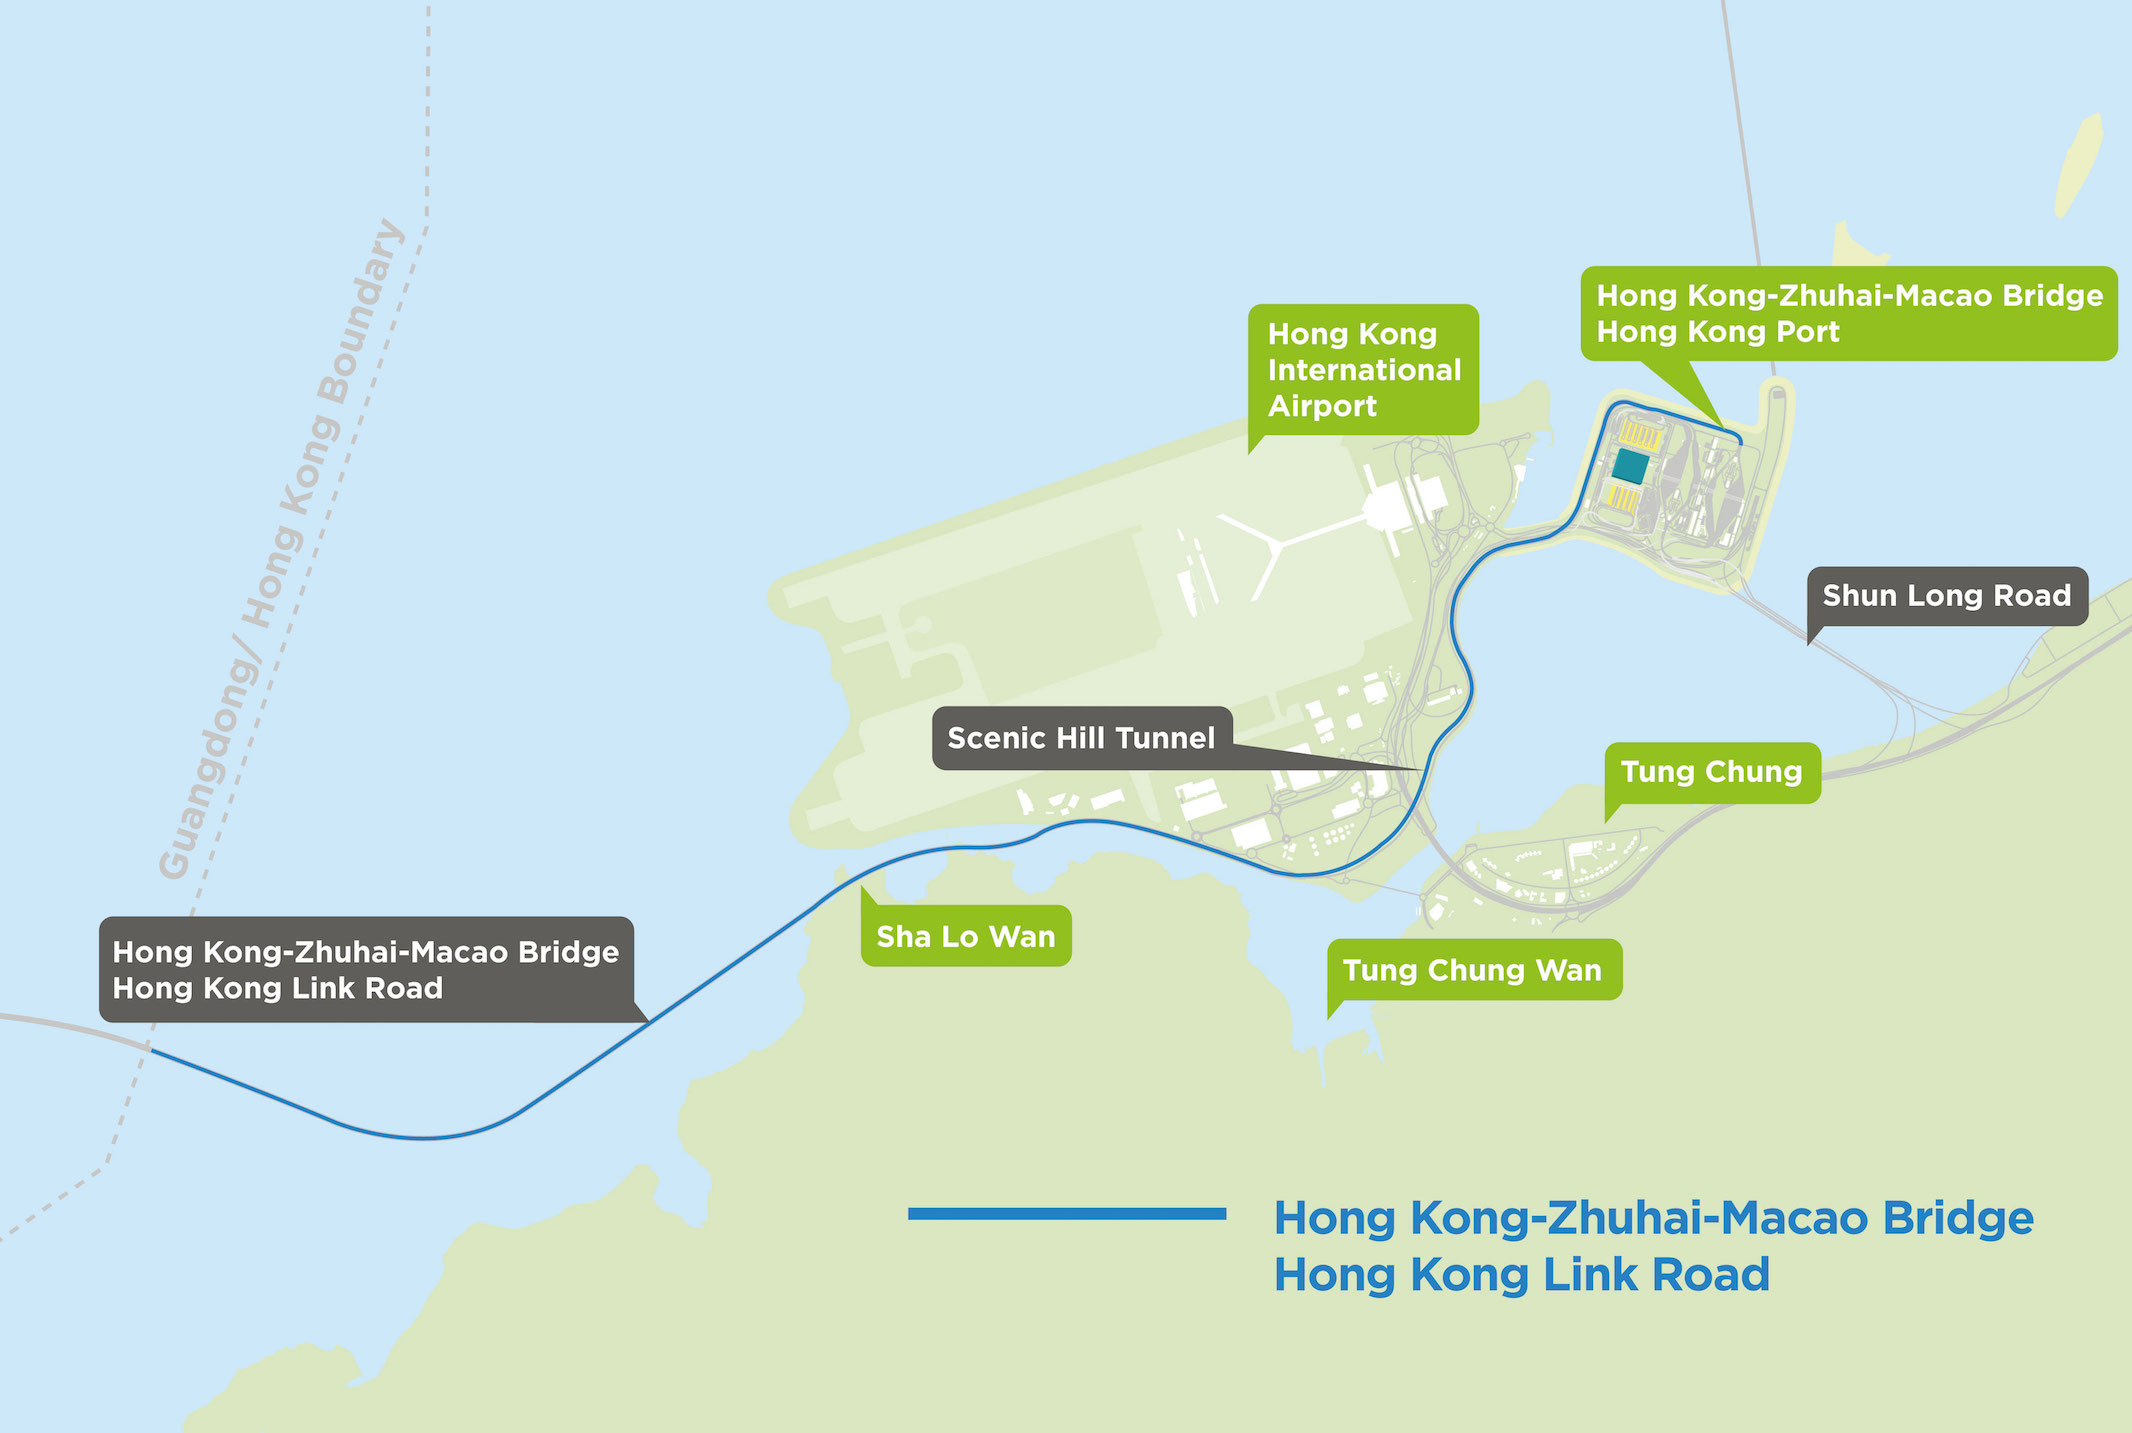 File:NR4255 at HZMB Hong Kong Port (20181025154502).jpg